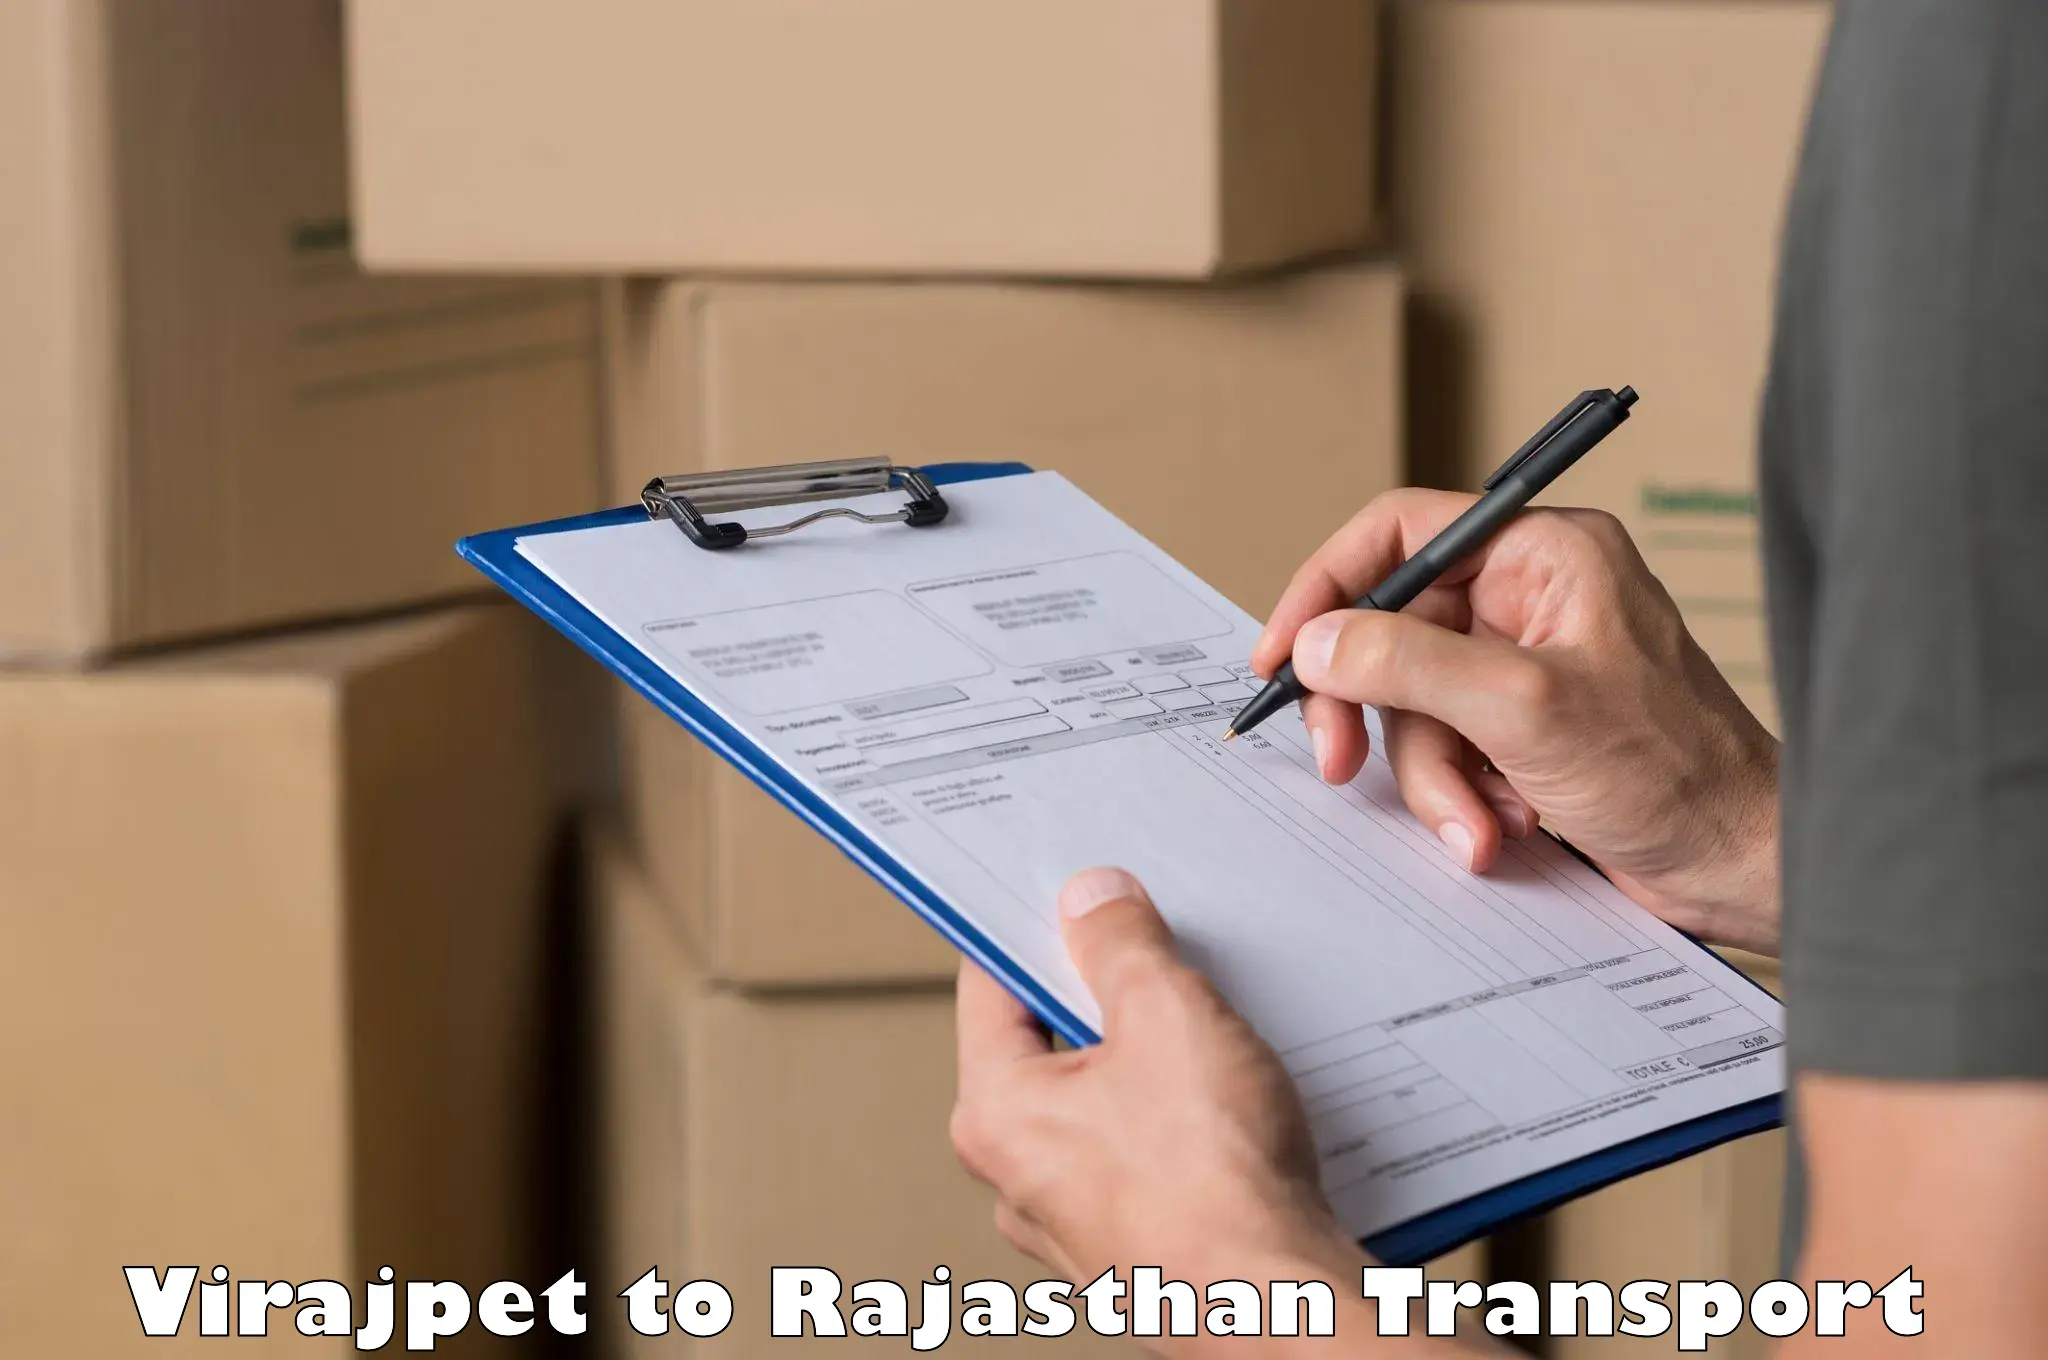 Road transport services Virajpet to Rajgarh Rajasthan